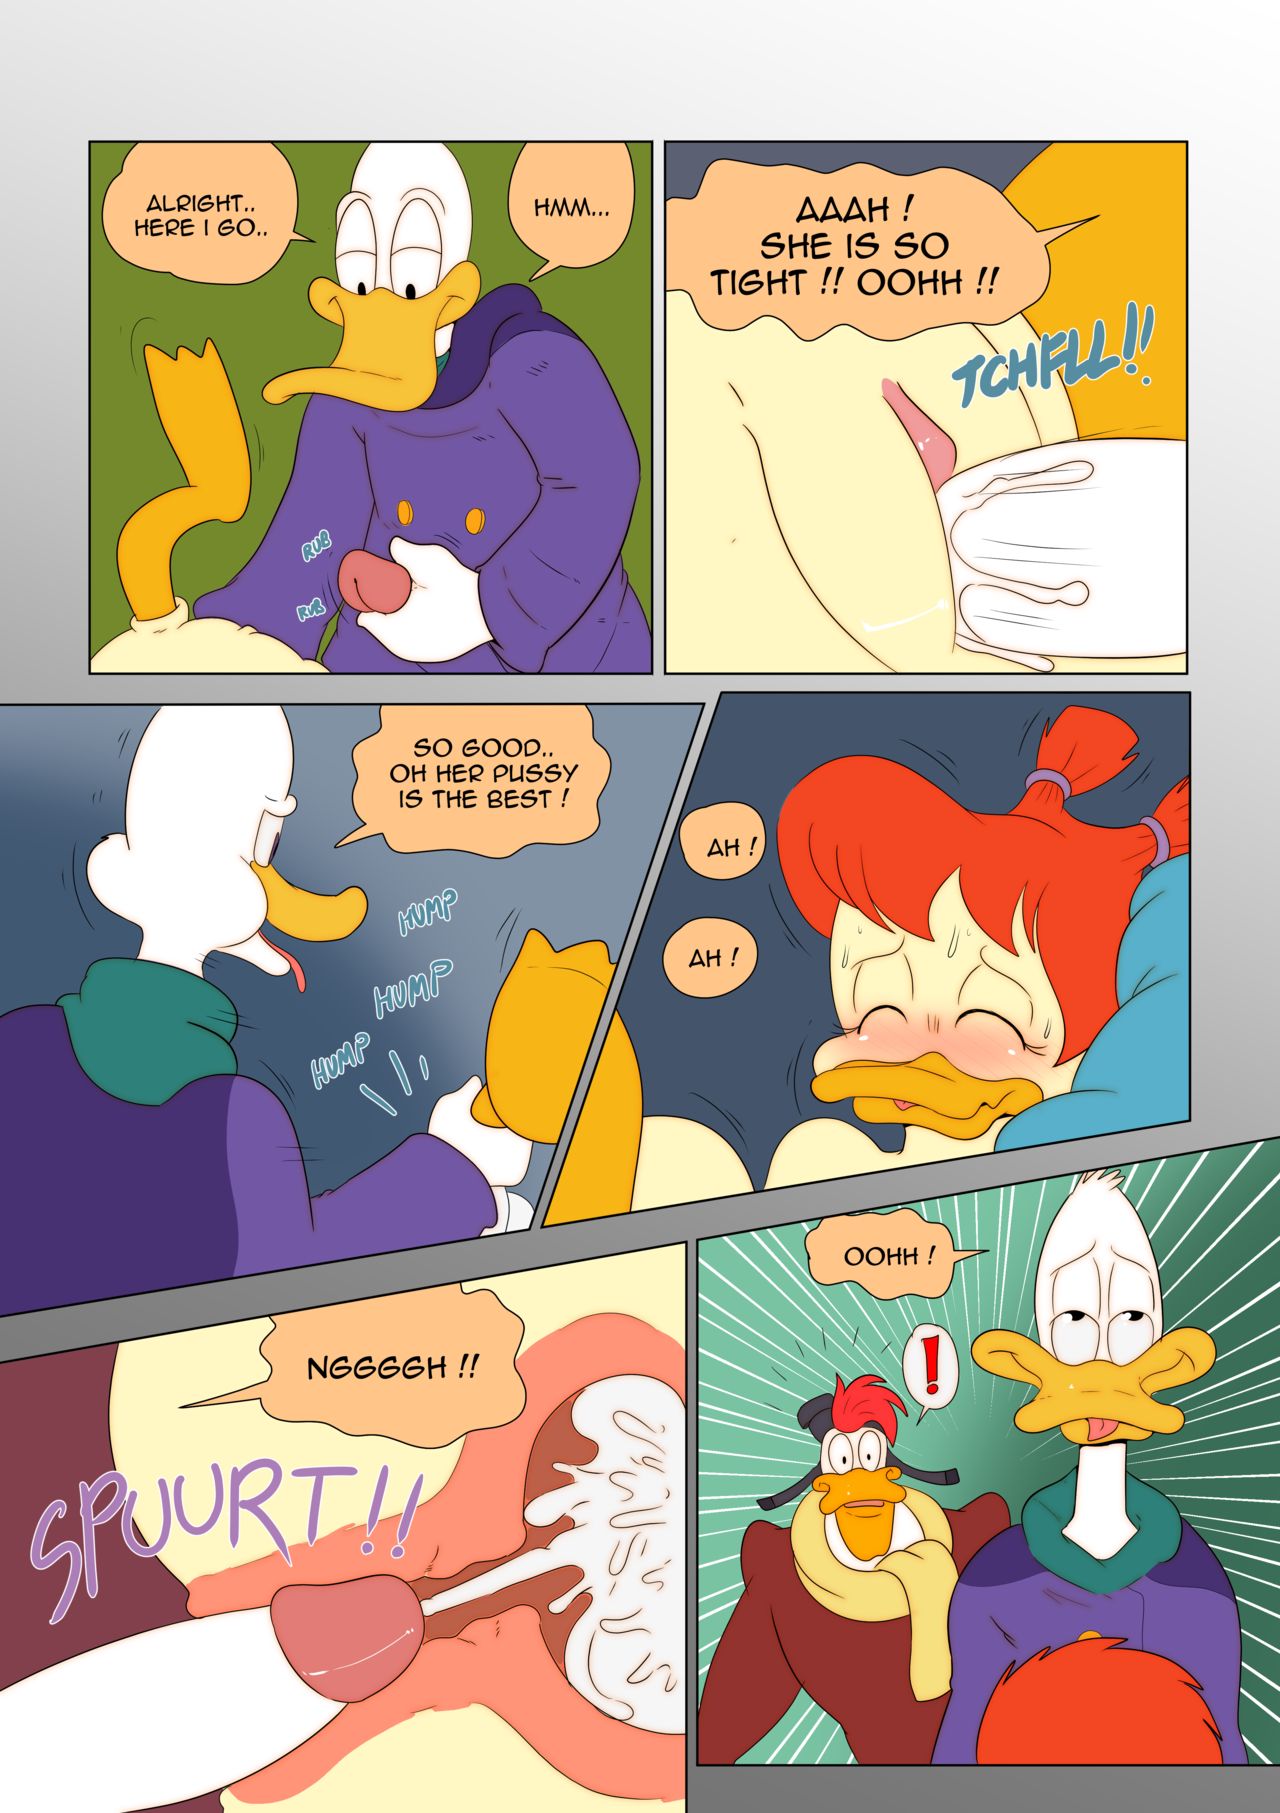 Comic porn darkwing duck